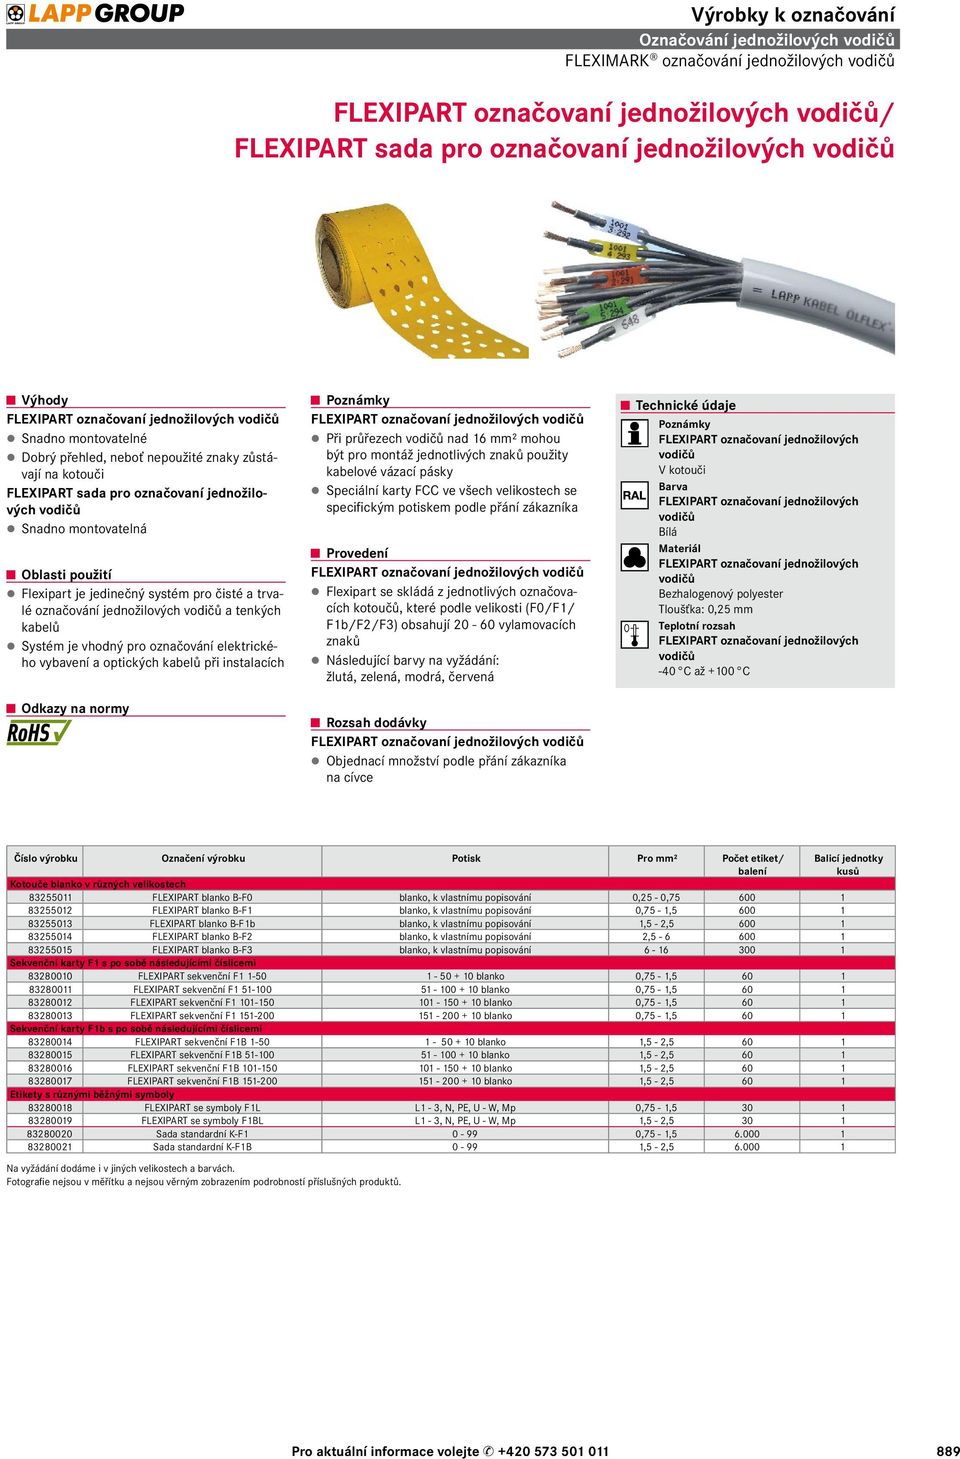 pro čisté a trvalé označování jednožilových vodičů a tenkých kabelů Systém je vhodný pro označování elektrického vybavení a optických kabelů při instalacích Poznámky FLEXIPART označovaní